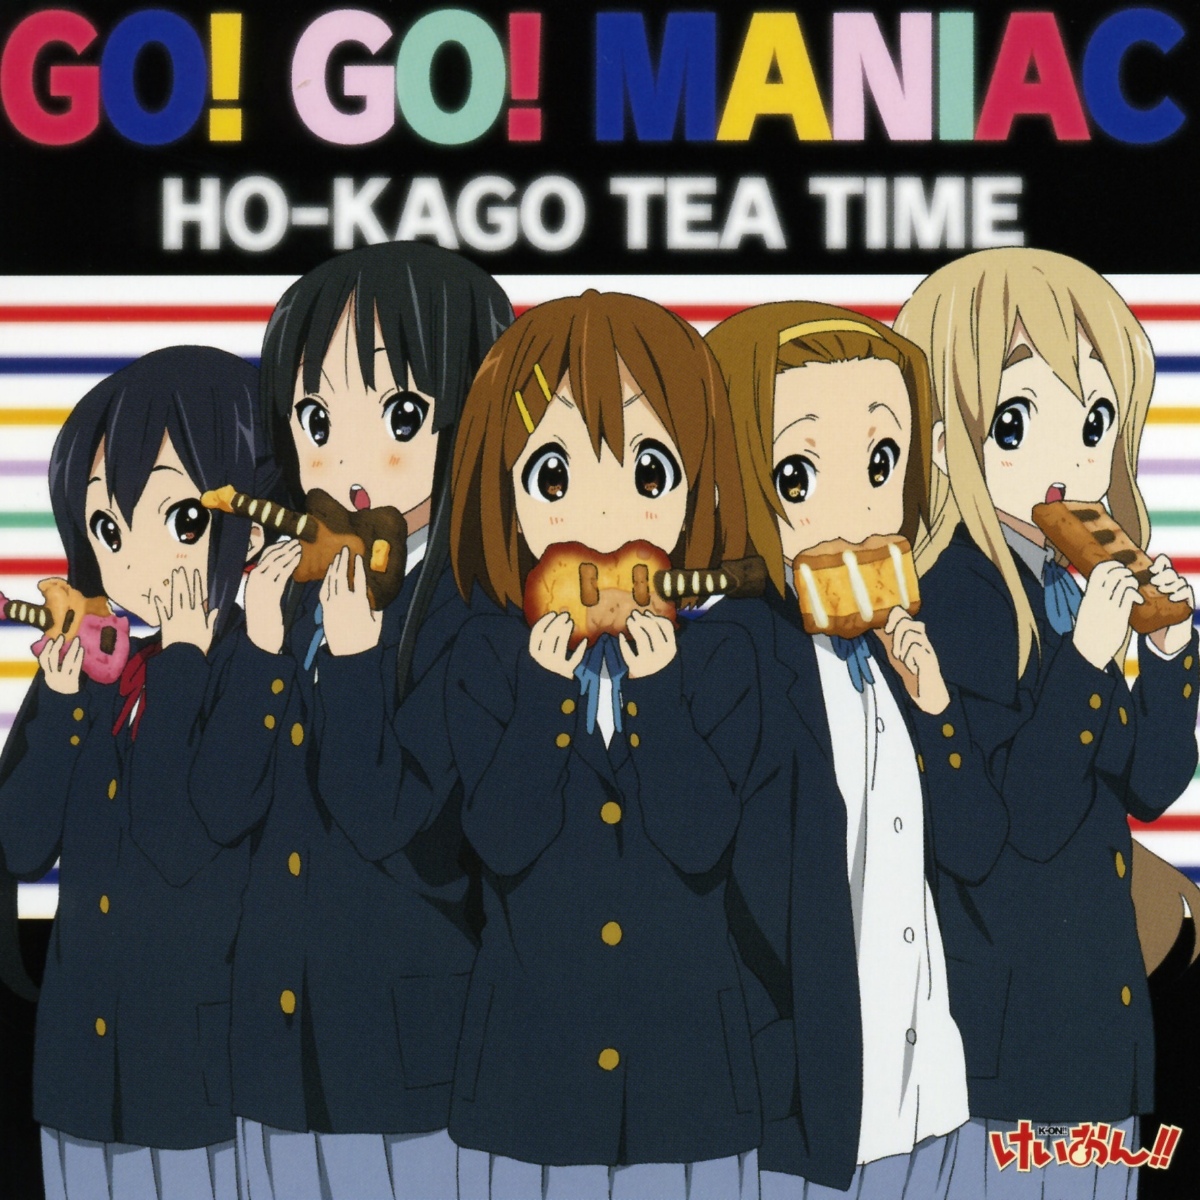 Houkago Tea Time - GO! GO! MANIAC